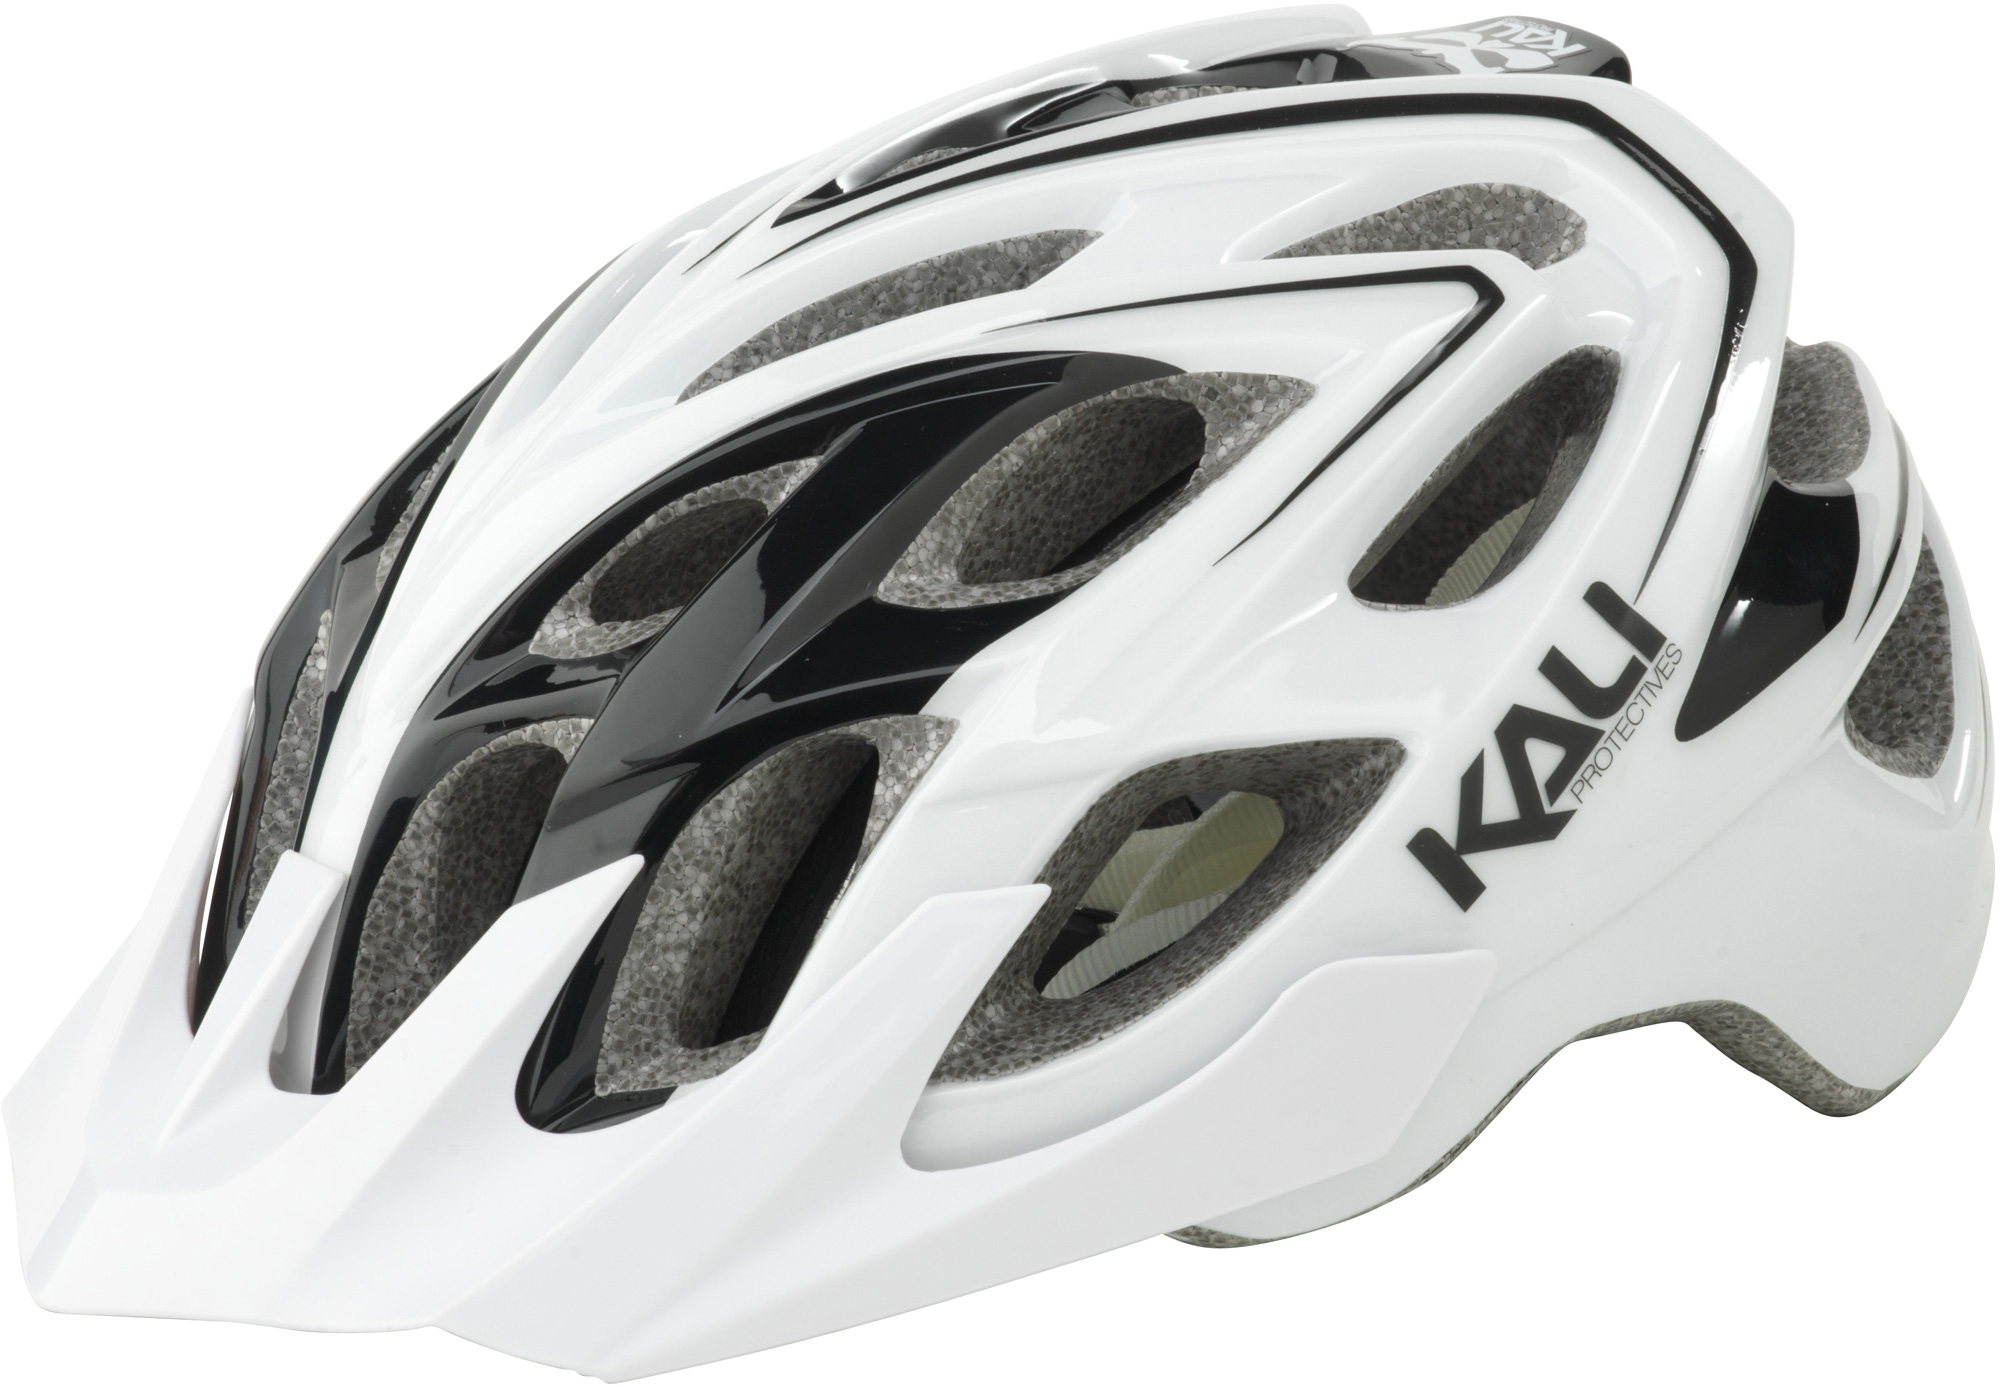 Kali Protectives Chakra Plus XC Helmet Wisdom Grey/White 